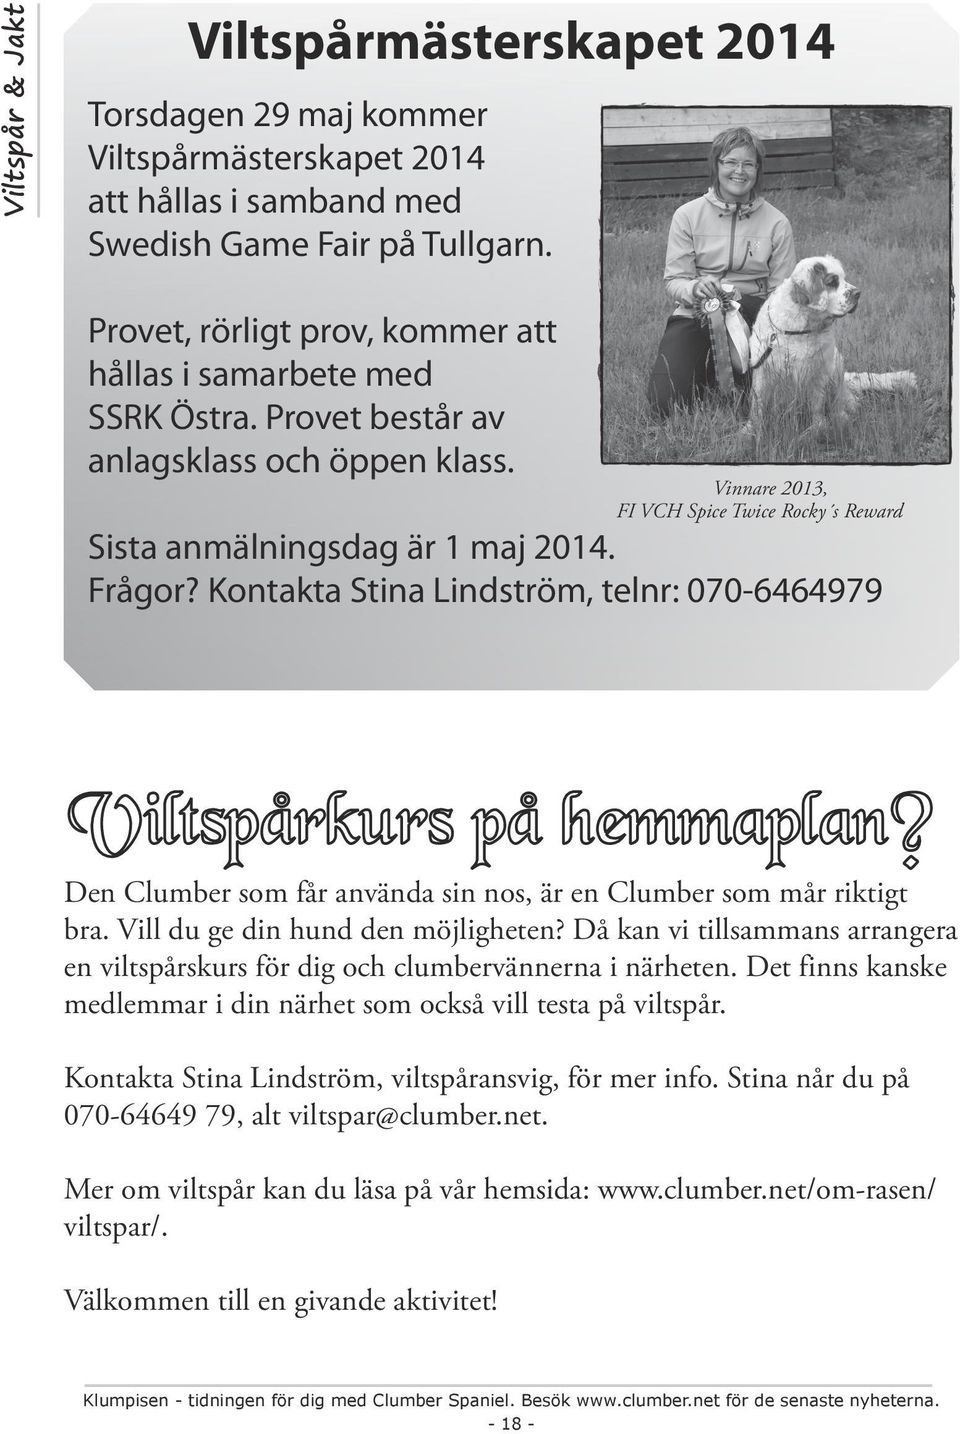 Frågor? Kontakta Stina Lindström, telnr: 070-6464979 Viltspårkurs på hemmaplan? Den Clumber som får använda sin nos, är en Clumber som mår riktigt bra. Vill du ge din hund den möjligheten?